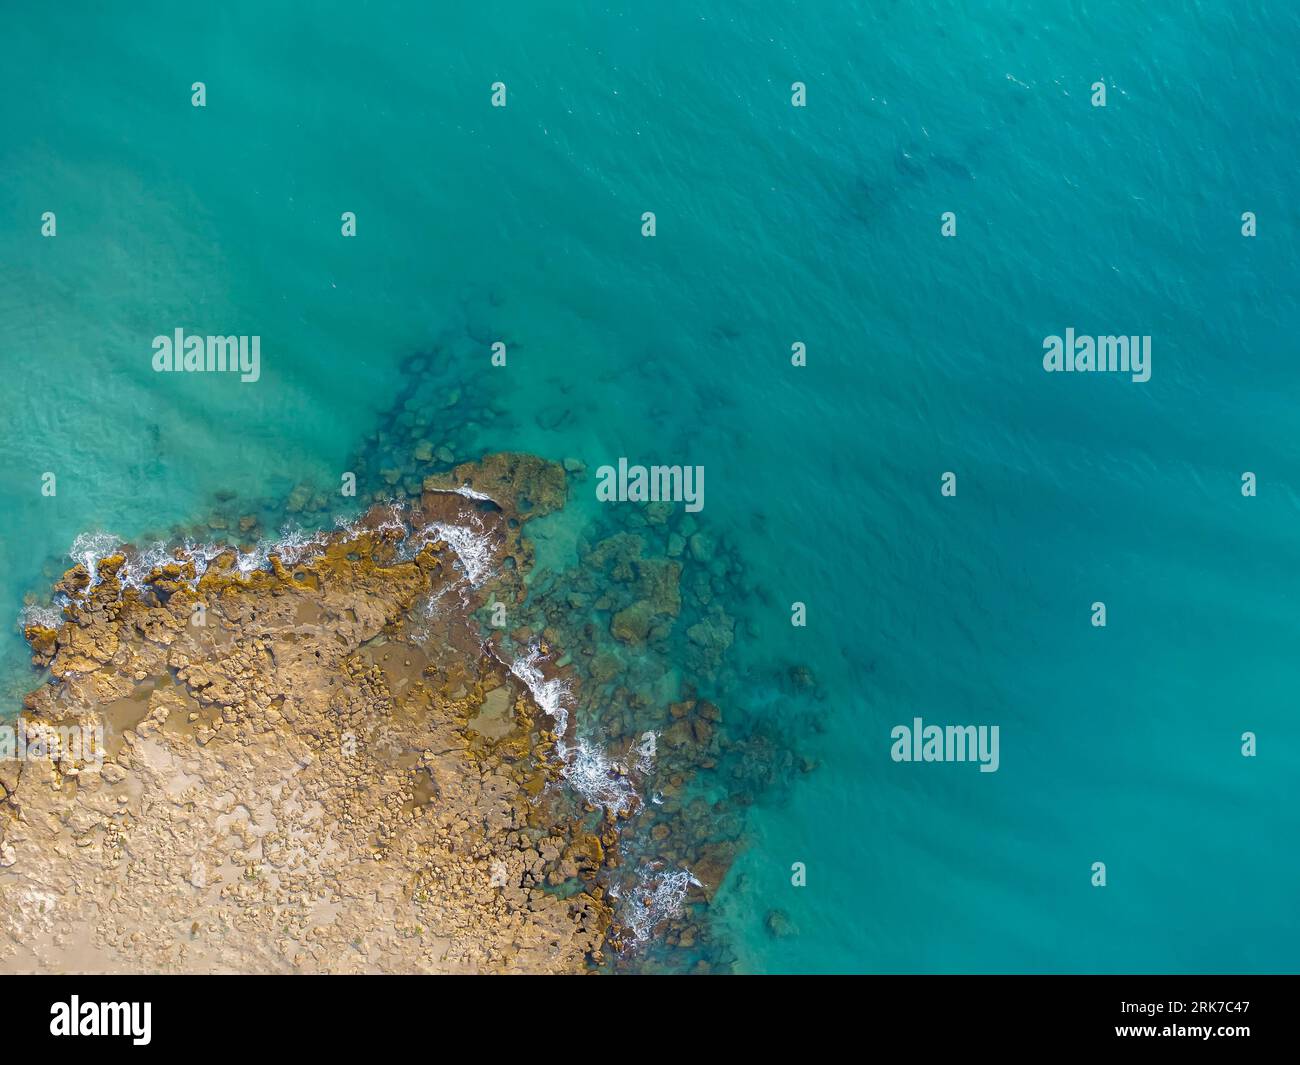 vista dall'alto di una sporgenza rocciosa, in un mare di acque turchesi cristalline, promontorio roccioso, costa, vista droni, spazio fotocopie Foto Stock